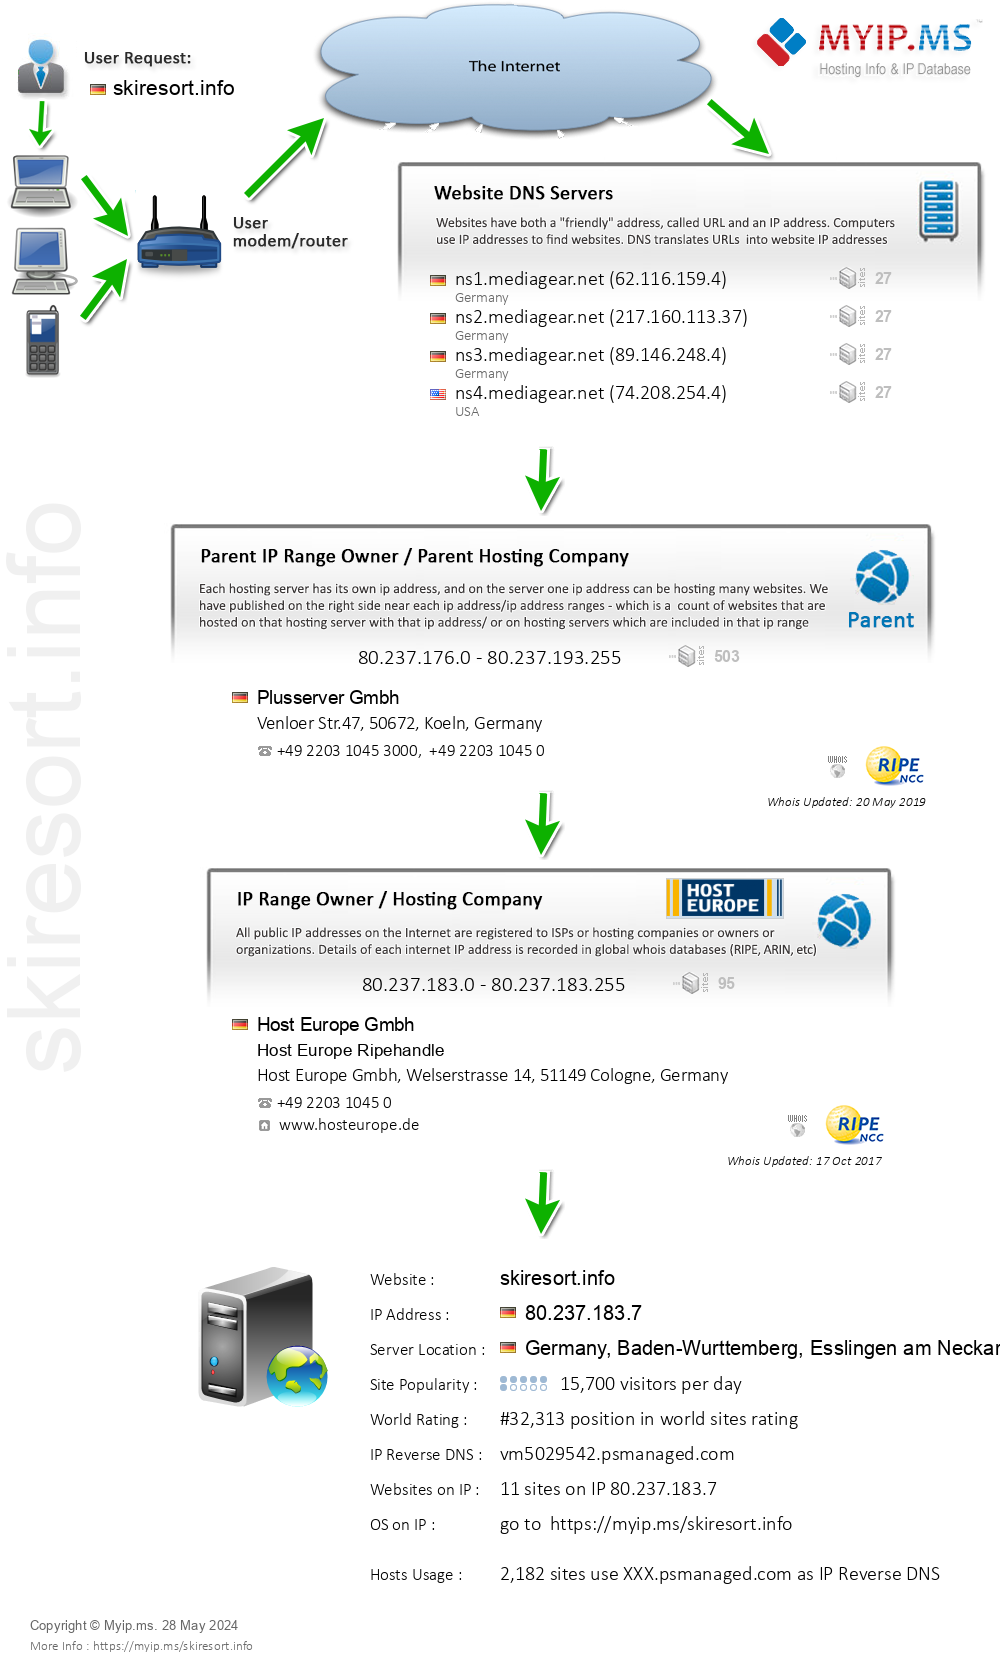 Skiresort.info - Website Hosting Visual IP Diagram